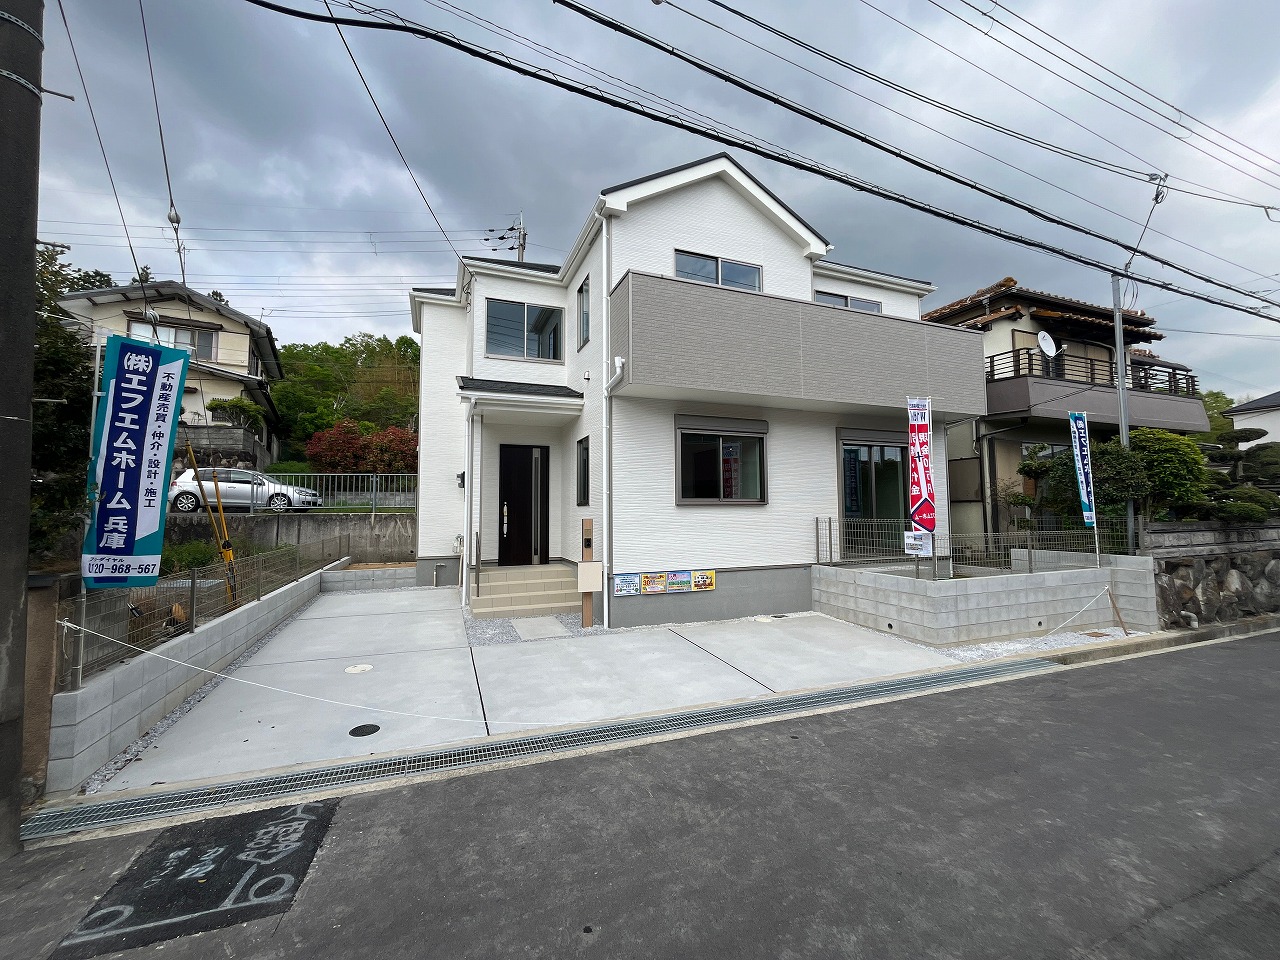 飯田産業は「誰もが当たり前に家を買える社会」を目指して、飯田グループとして一日約120棟、一年で約46,000棟を販売しております！おかげさまで皆様に選ばれて日本一です！